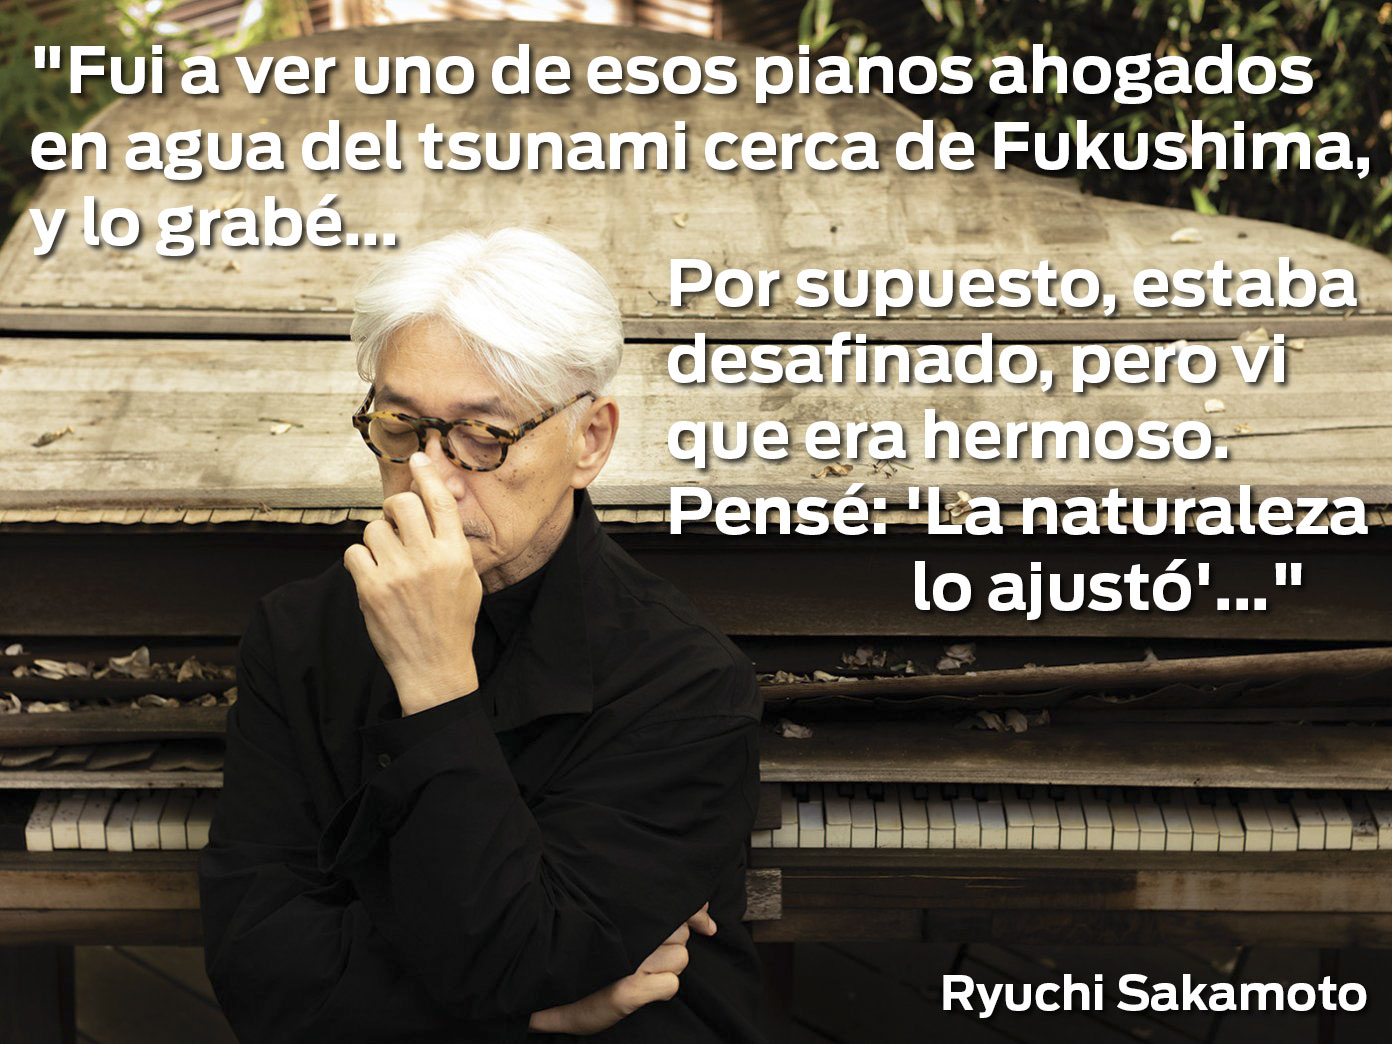 Ryuchi Sakamoto -literales, piano Tsunami Japón